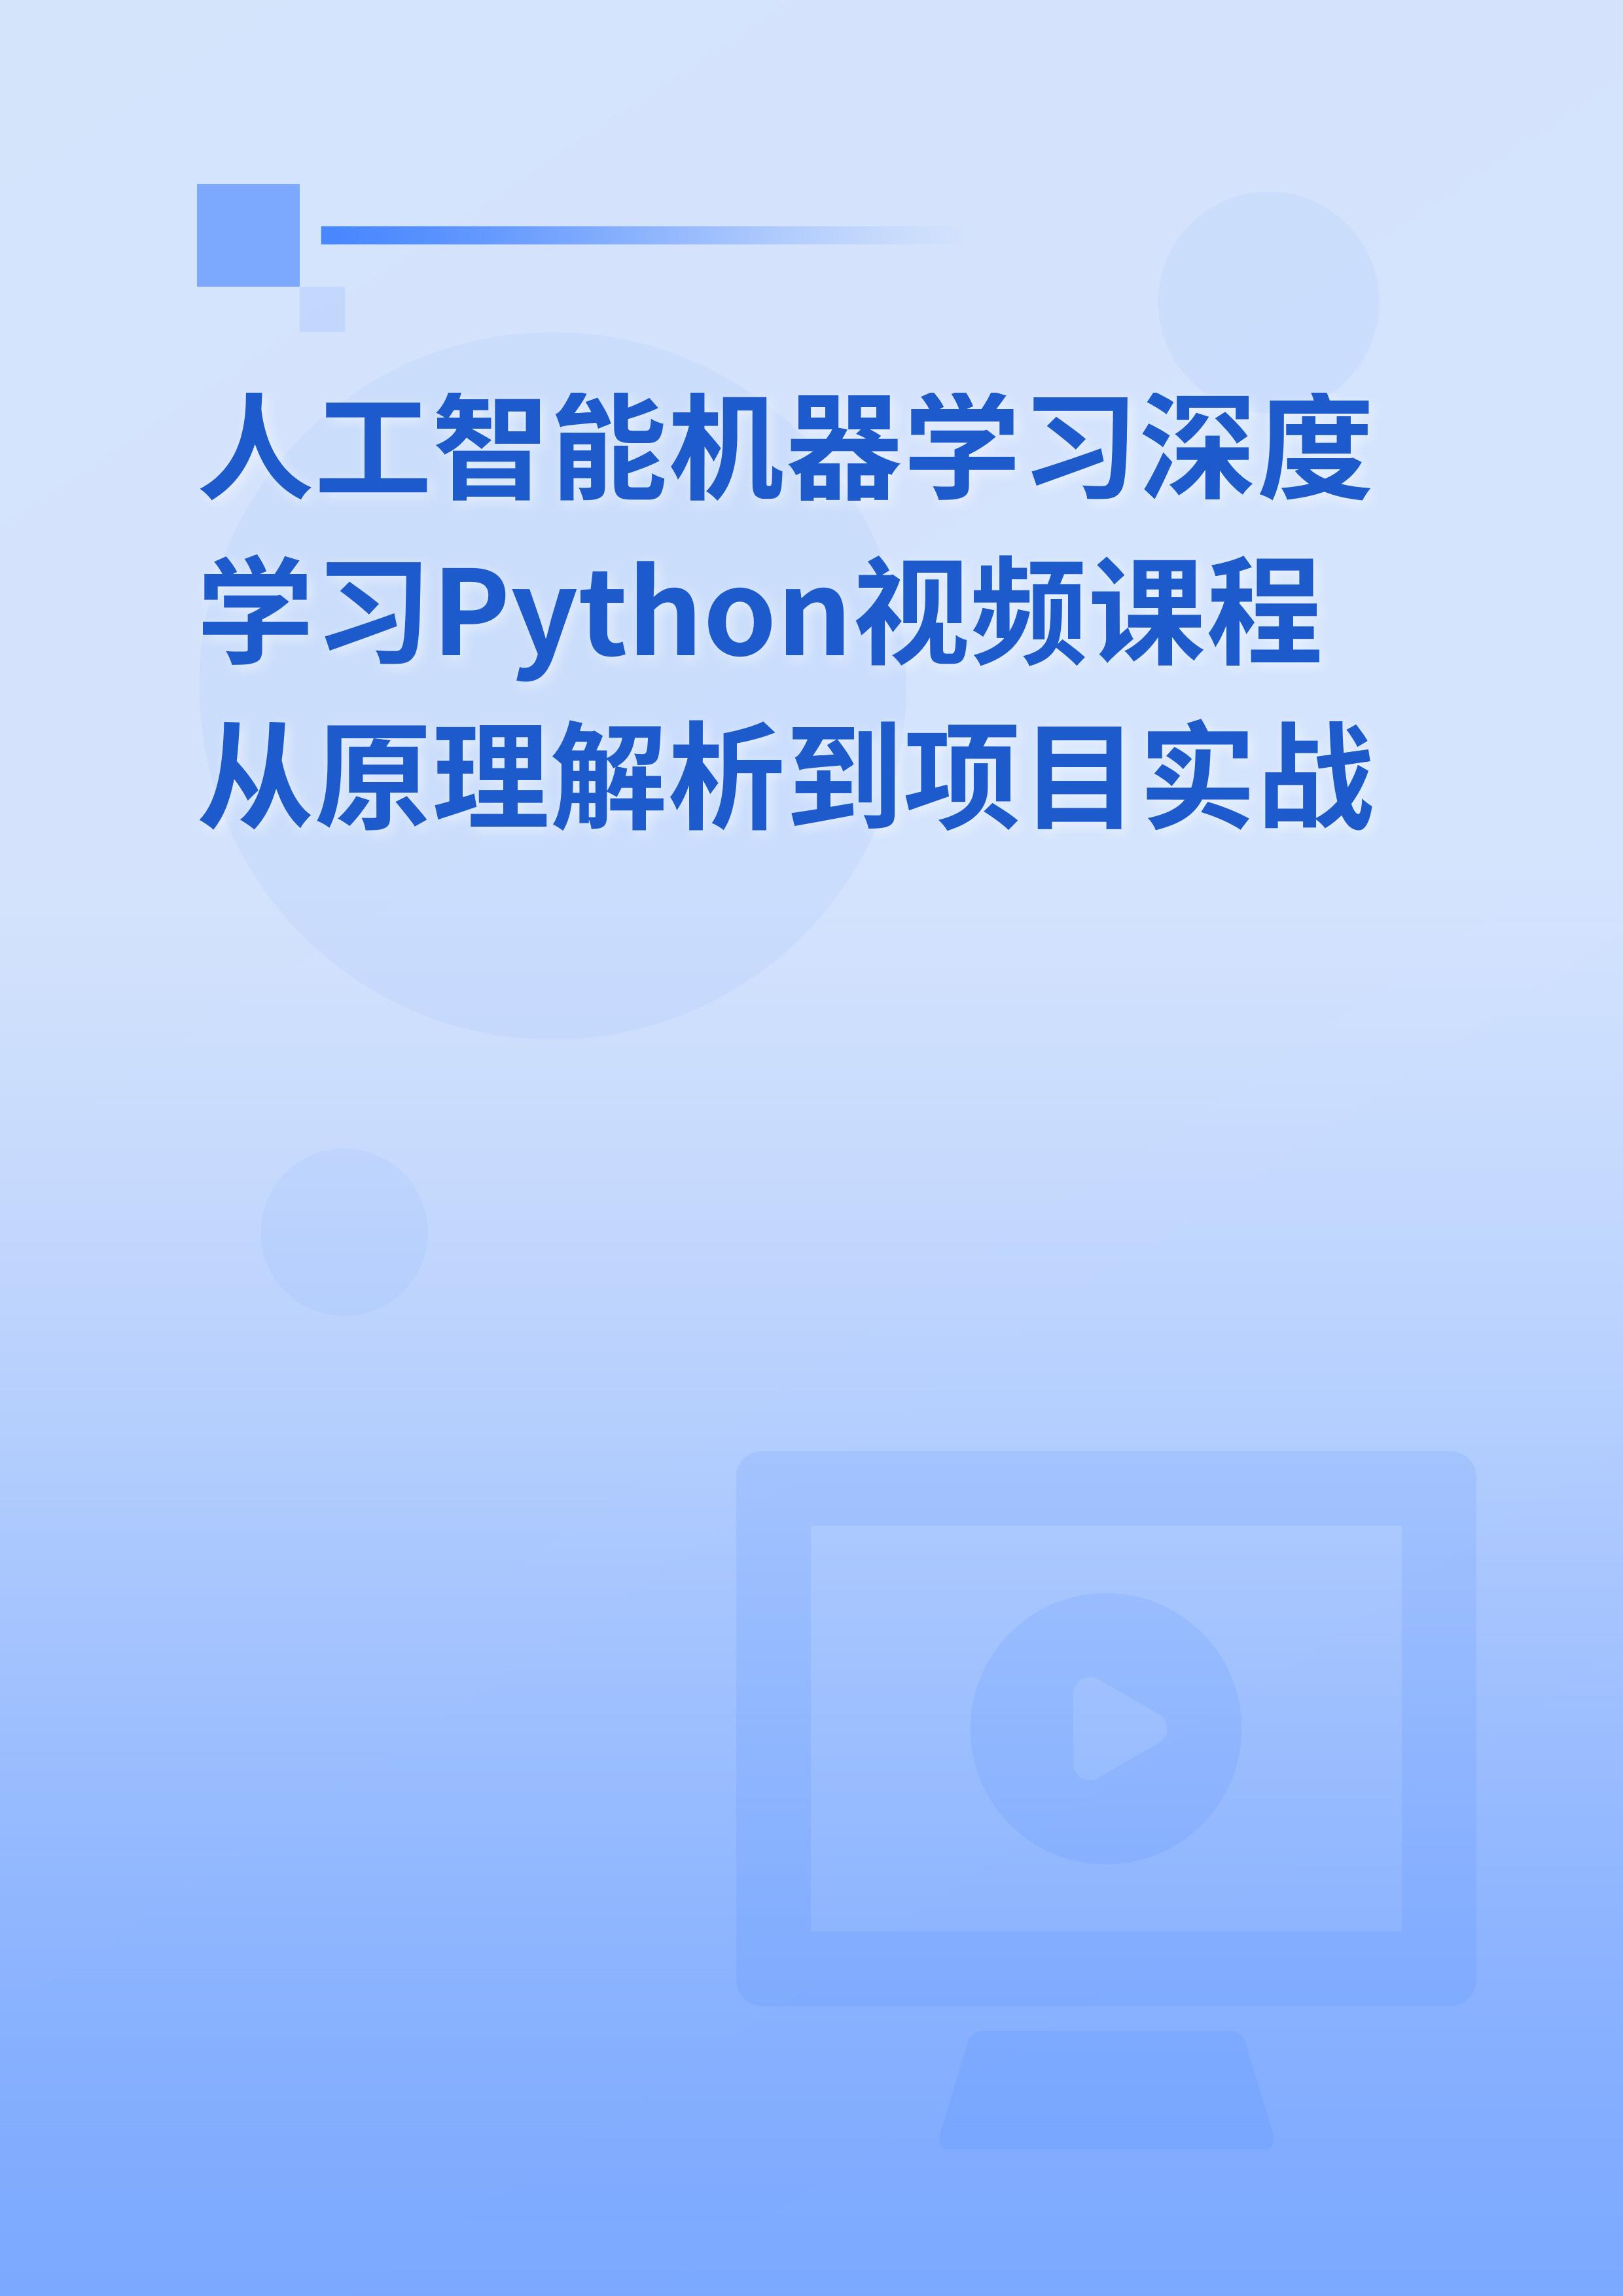 人工智能Python深度学习Pytorch实战高薪课程从原理解析到项目开发